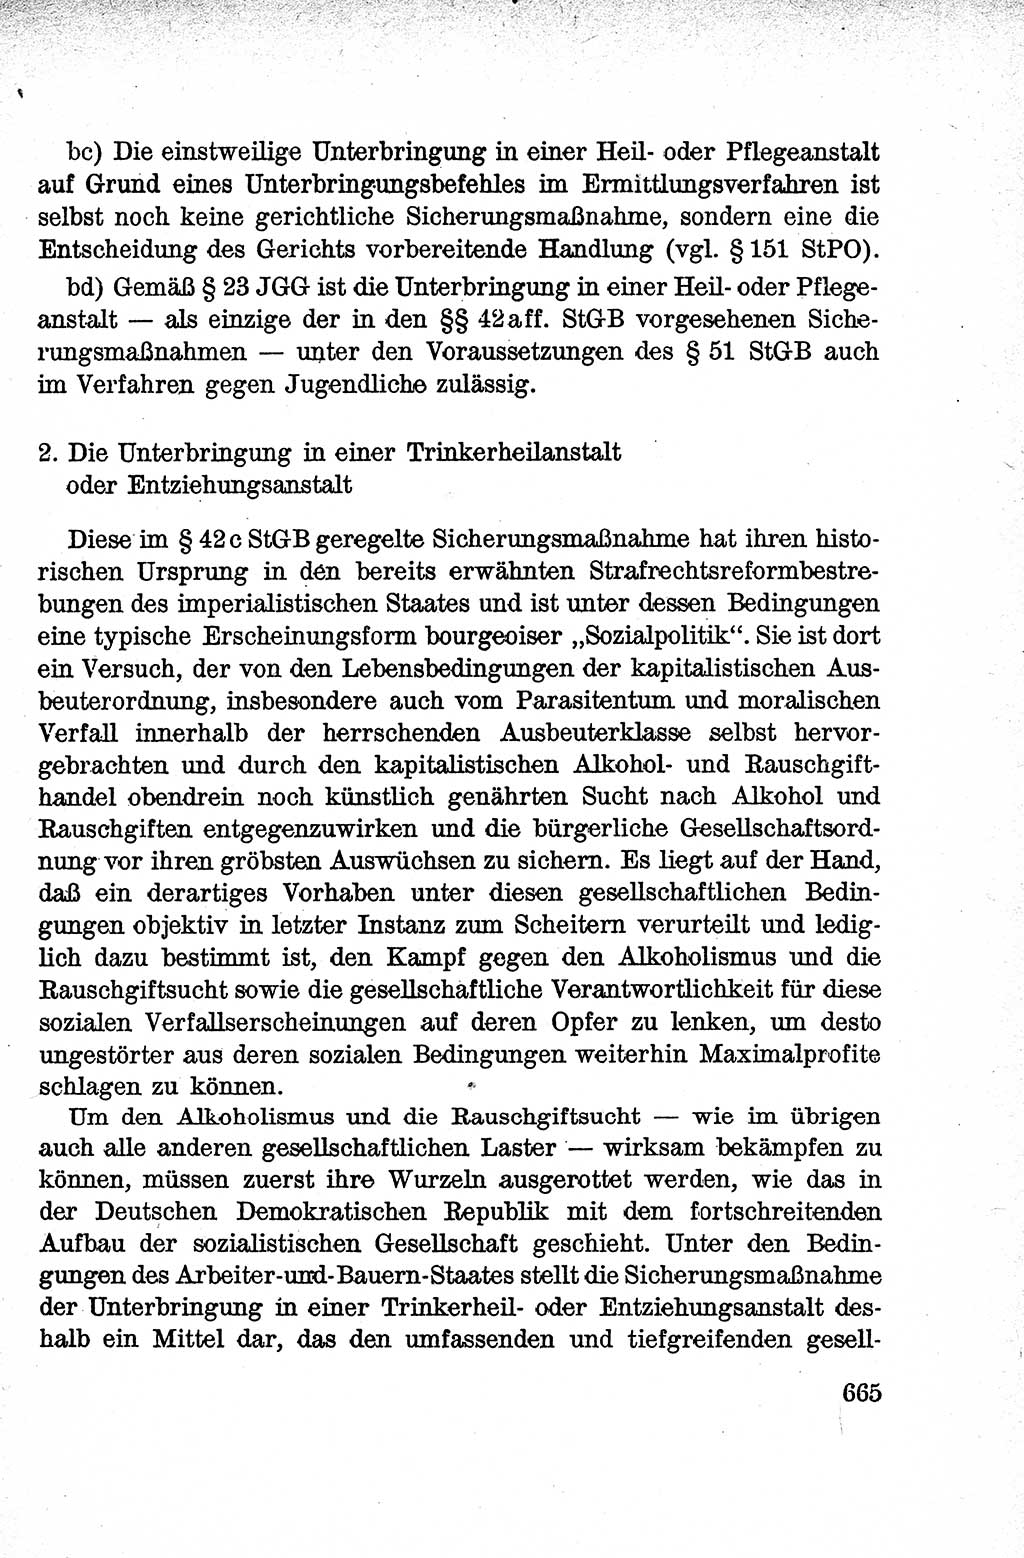 Lehrbuch des Strafrechts der Deutschen Demokratischen Republik (DDR), Allgemeiner Teil 1959, Seite 665 (Lb. Strafr. DDR AT 1959, S. 665)